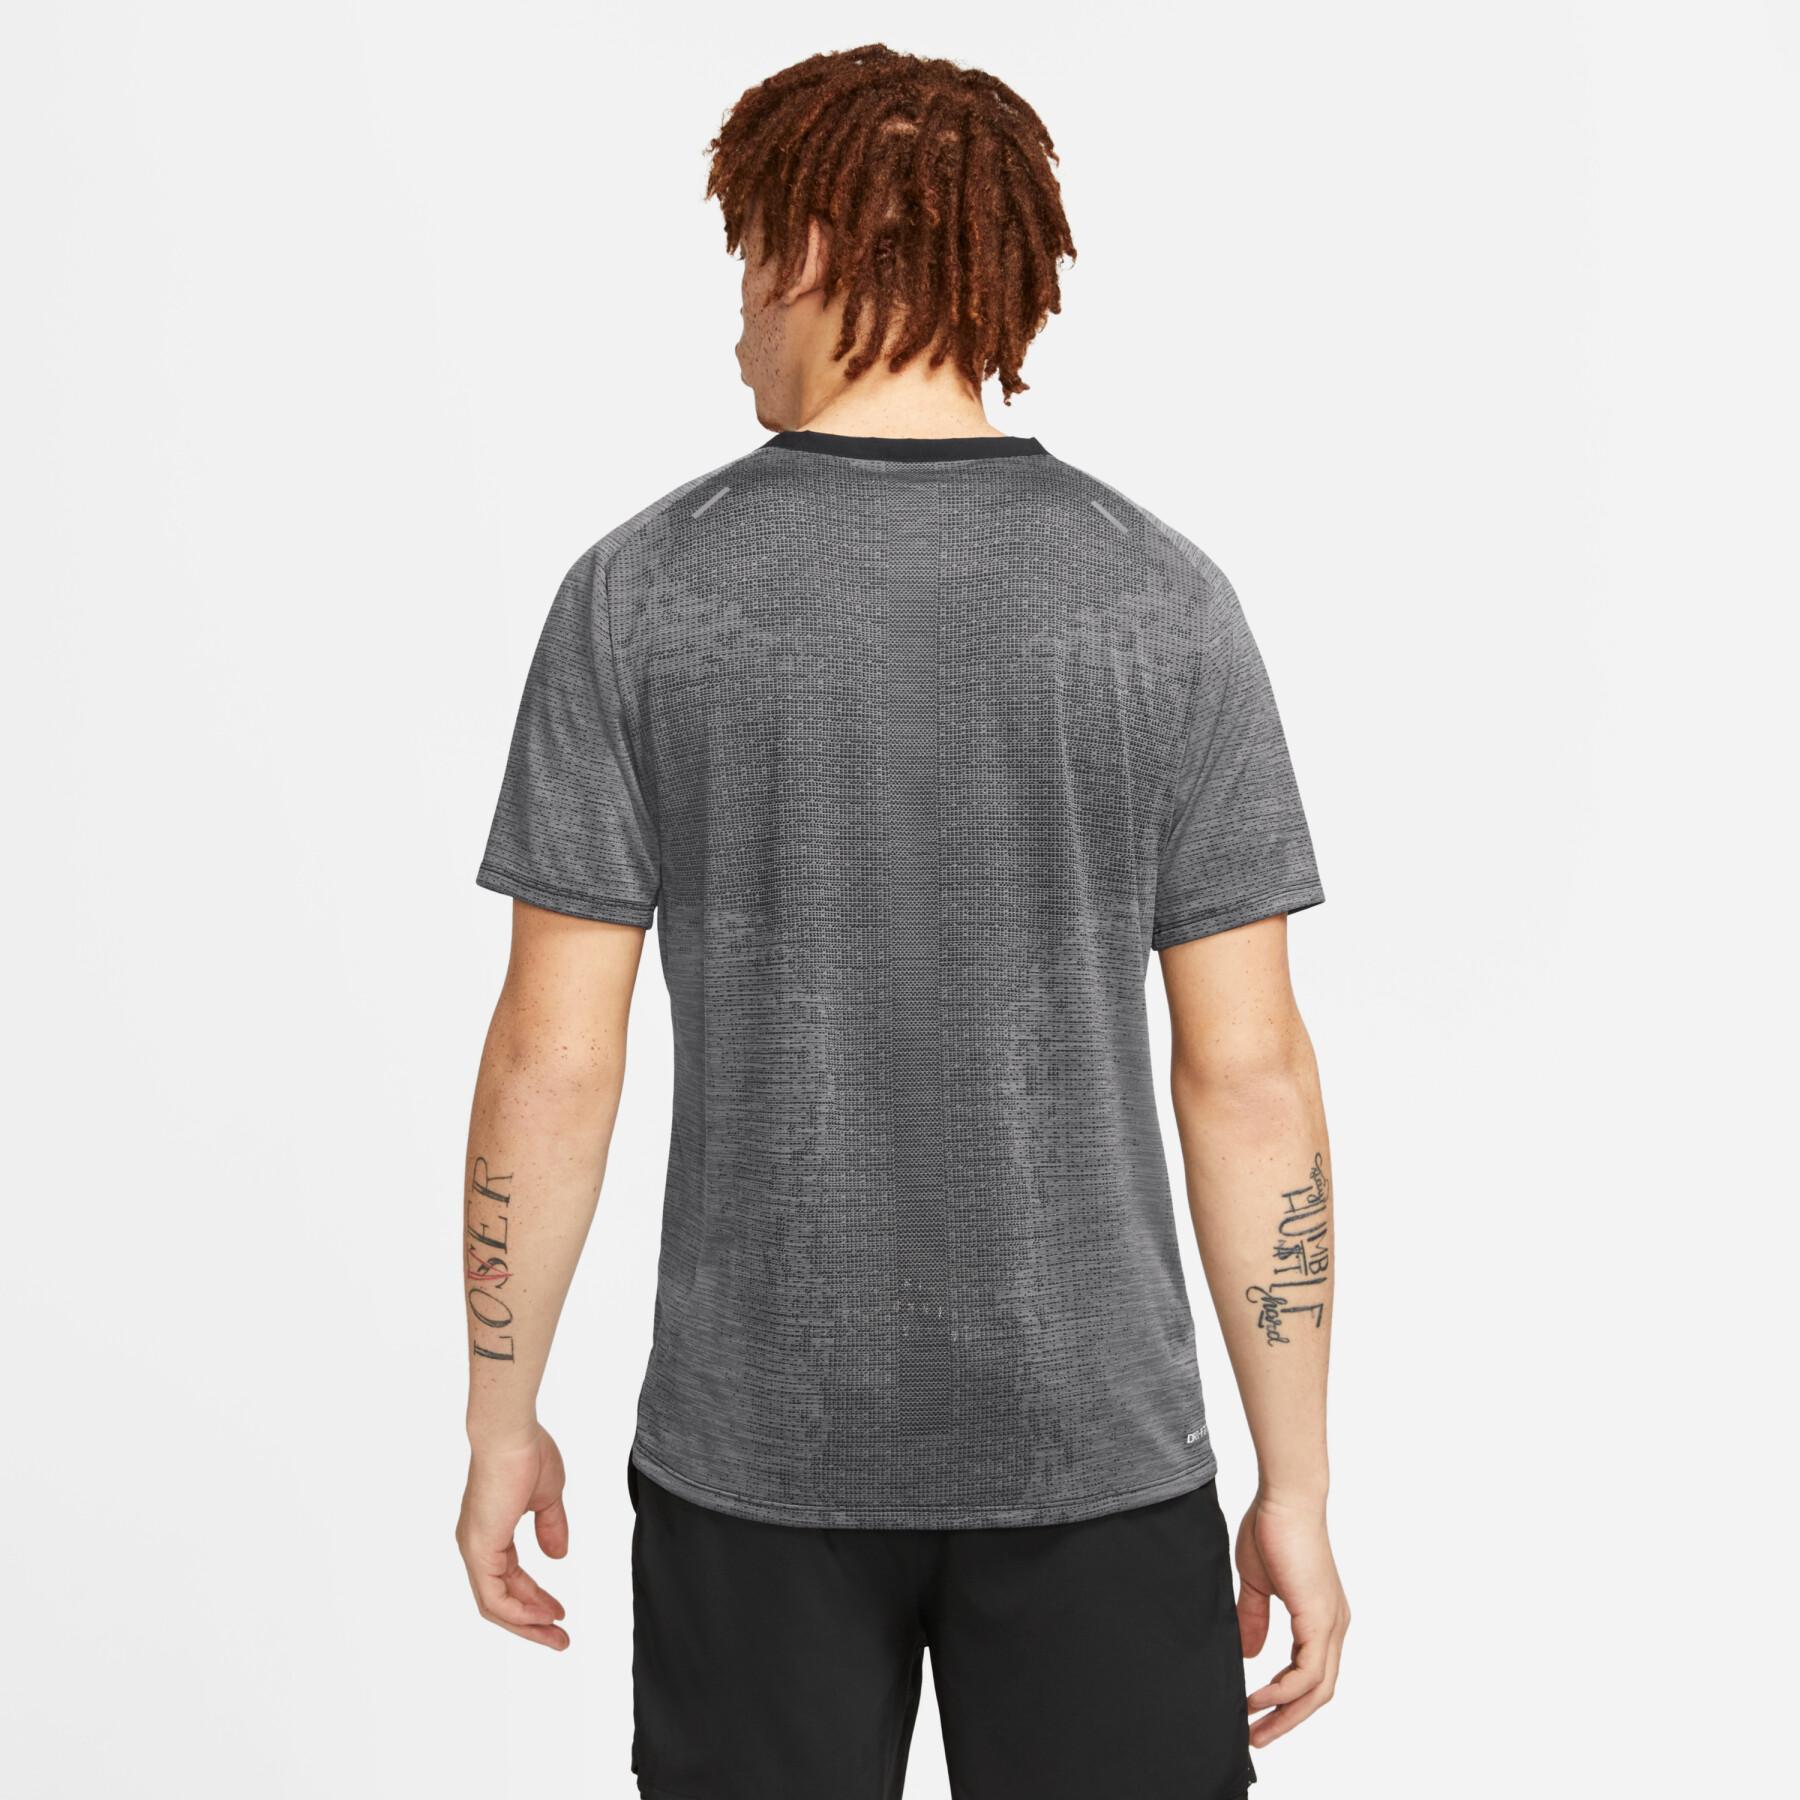 T-shirt Nike Techknit Ultra